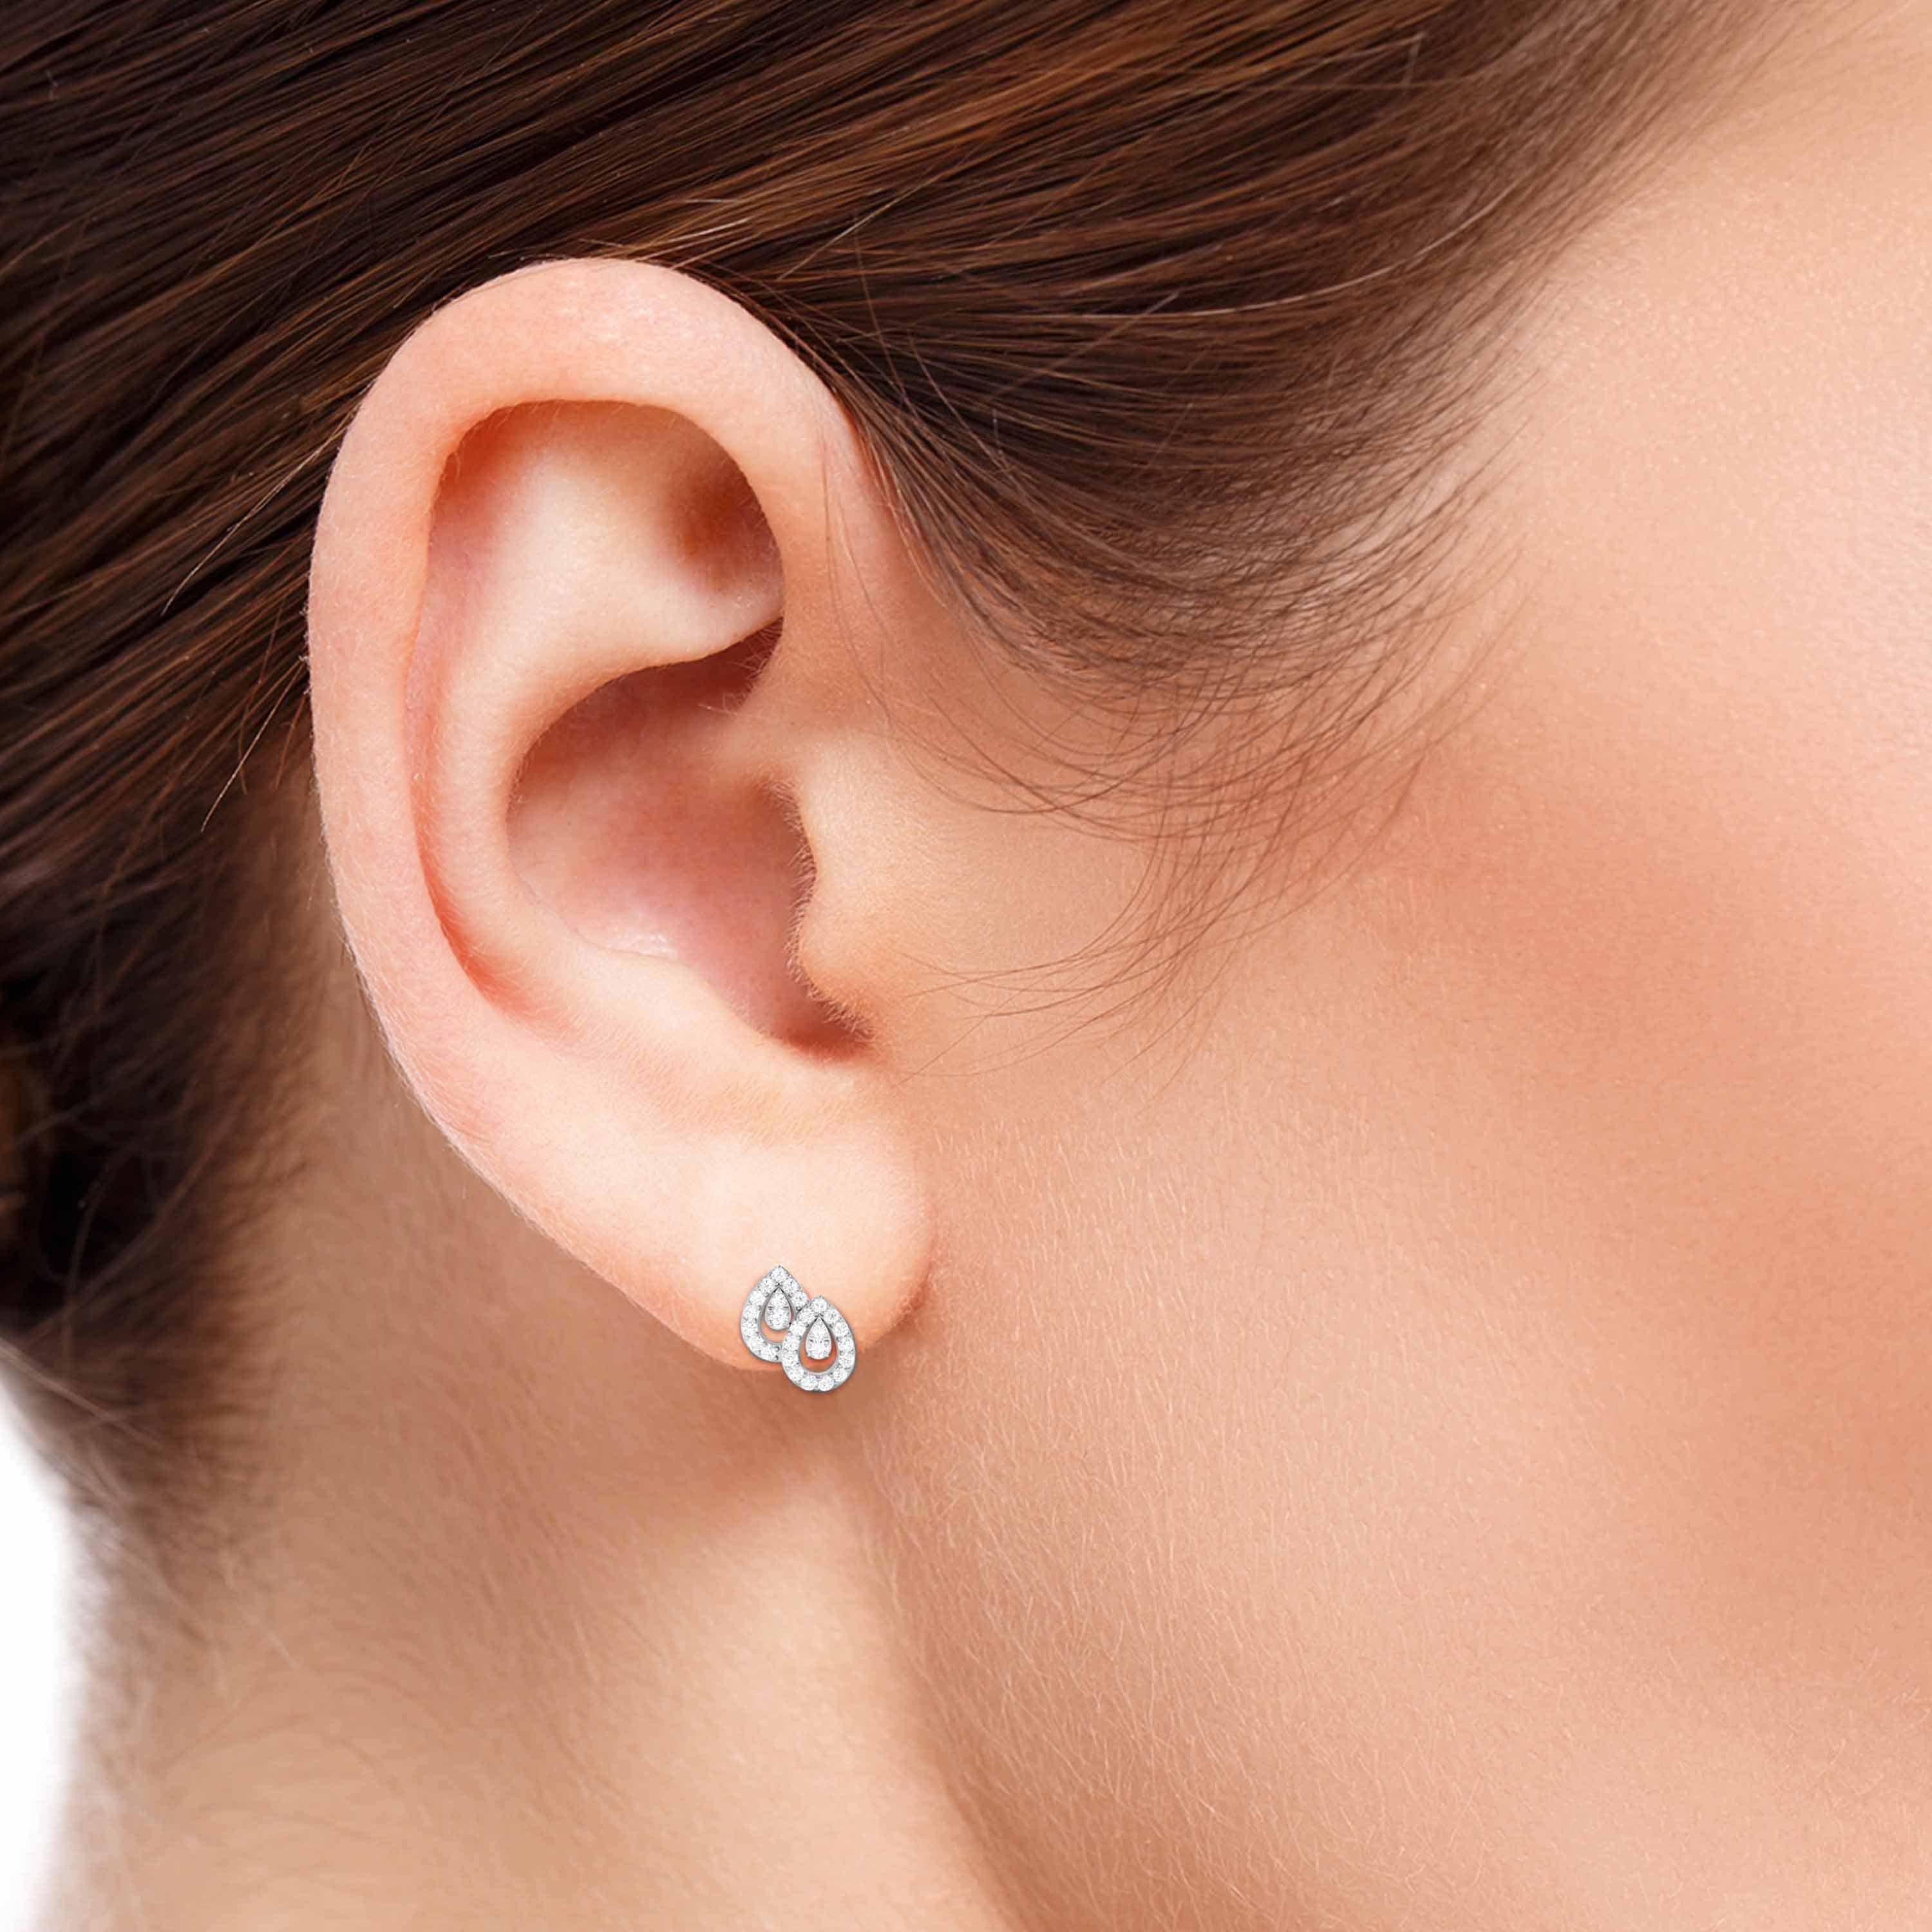 Tiny Diamond Stud Earrings, Small Diamond Stud Earrings, White Diamond  Earrings, 14k Gold, Rose Gold, White Gold Studs, Simple and Minimal - Etsy  Norway